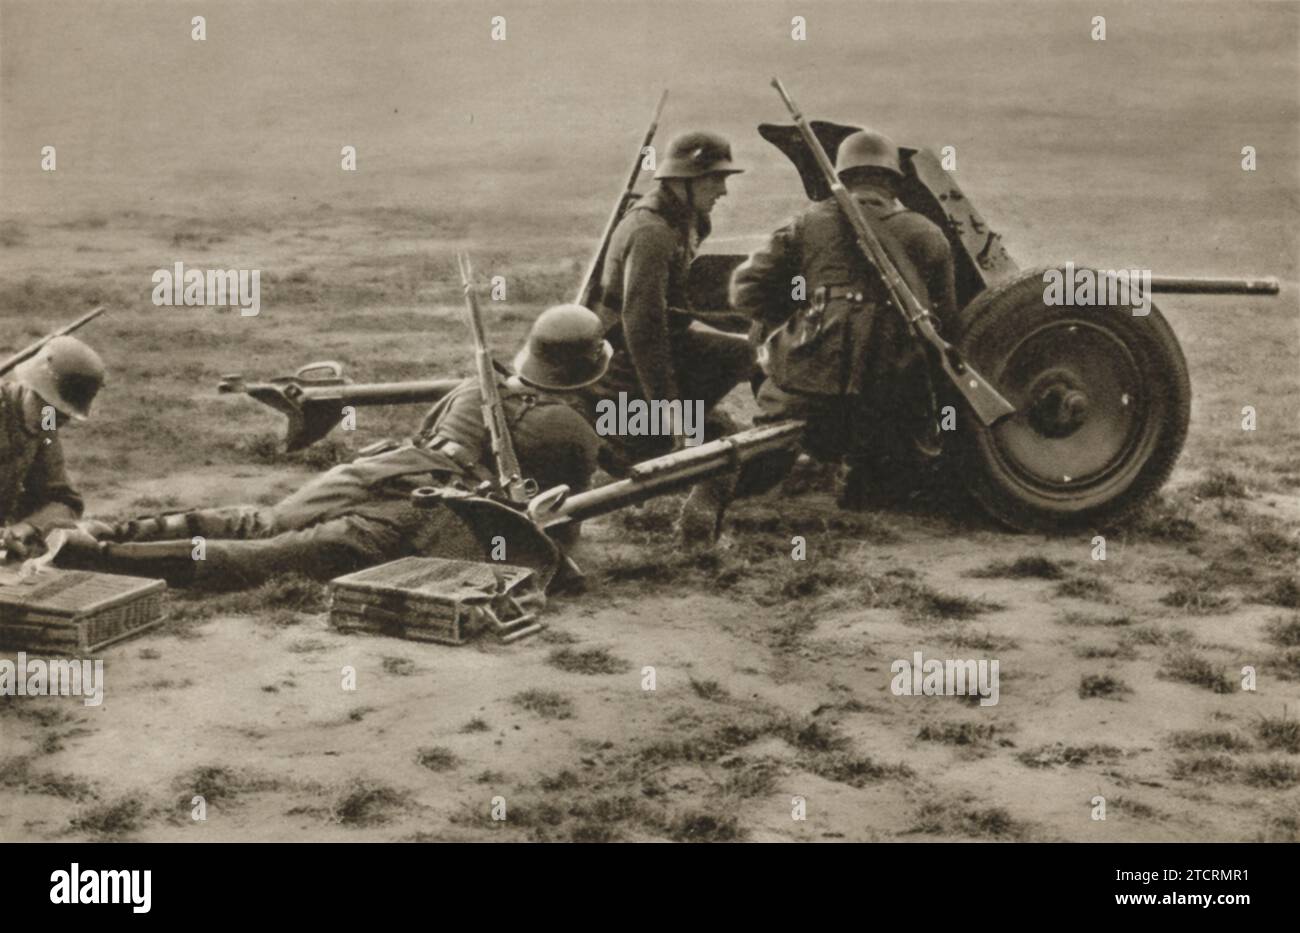 Les recrues allemandes sont capturées au milieu de l'entraînement avec un canon antichar pendant leurs exercices militaires. Cette formation est essentielle pour les familiariser avec les armes lourdes et leur rôle dans le combat. Banque D'Images